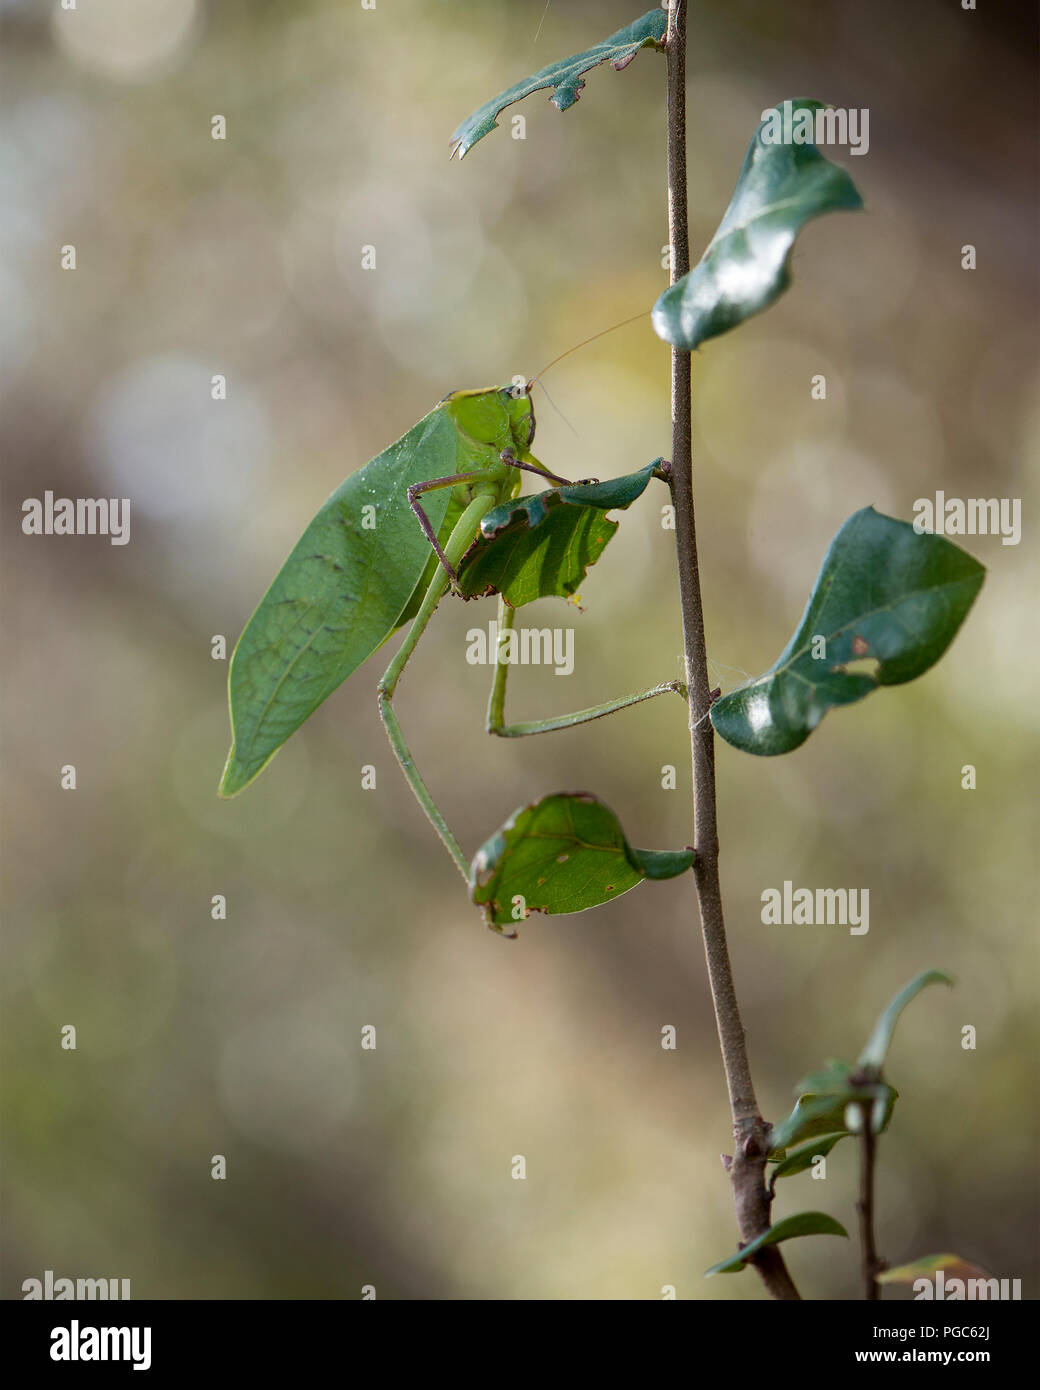 Katydid insecte sur une branche verte avec un camouflage affichant sa couleur verte, des antennes, des yeux, dans son environnement et ses environs. Photo. Photo. Banque D'Images